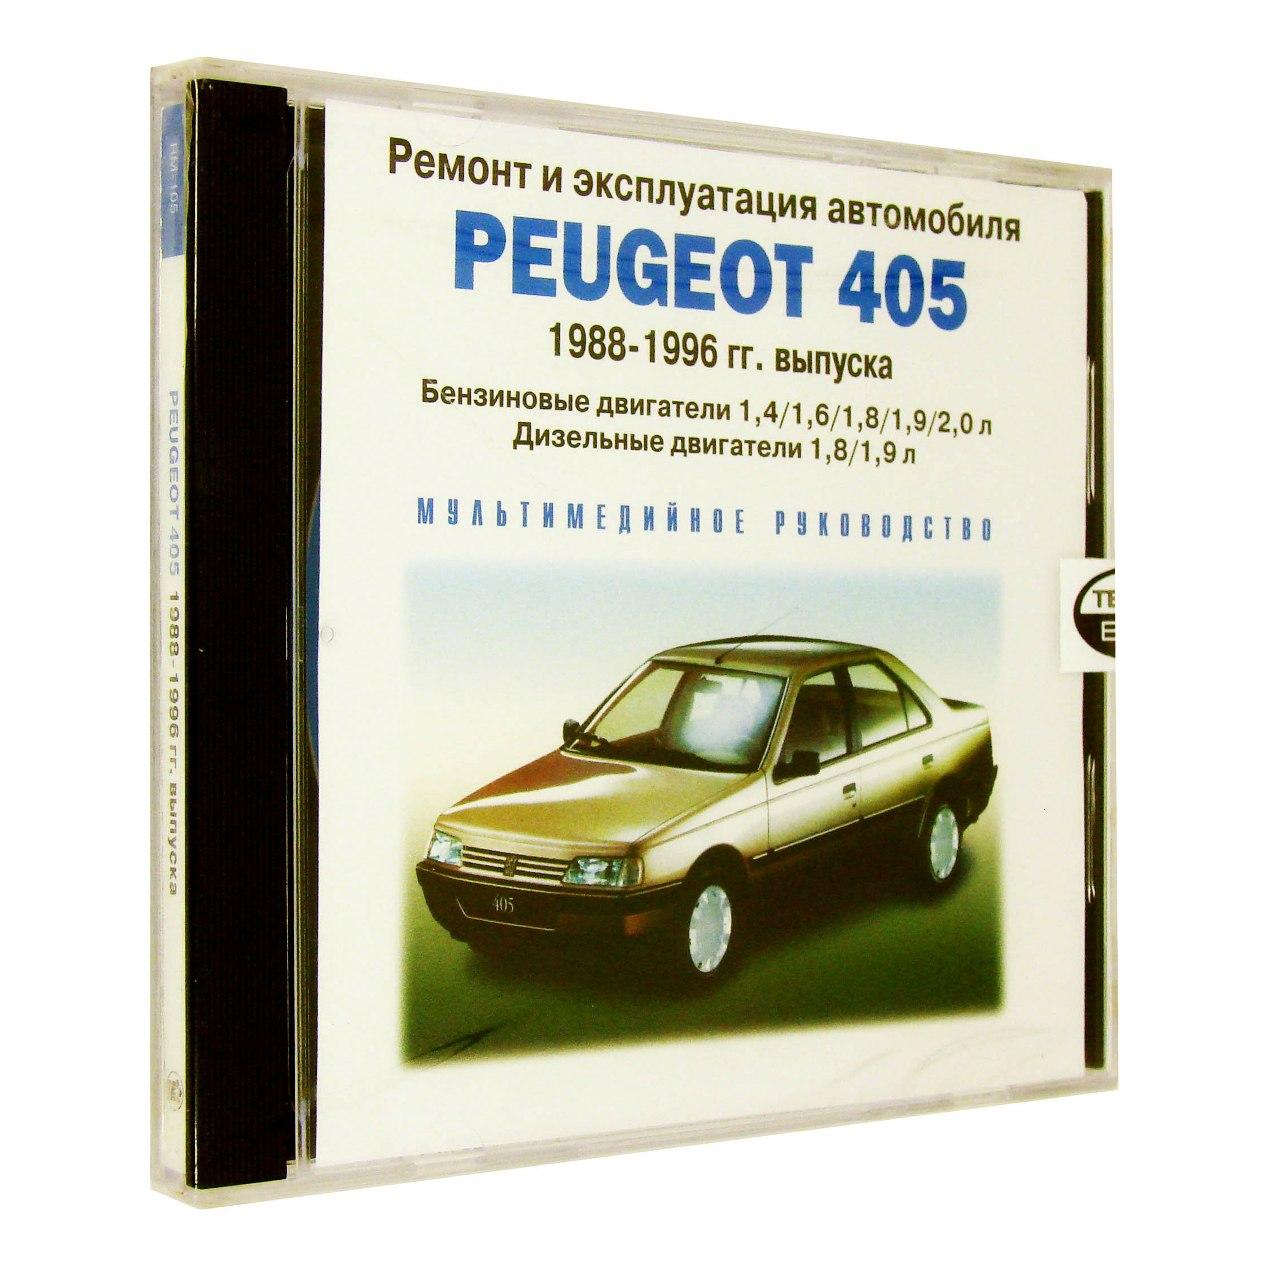 Компьютерный компакт-диск Peugeot 405 1988-1996 г.:ремонт и эксплуатация автомобиля (ПК), фирма "RMG Multimedia", 1CD